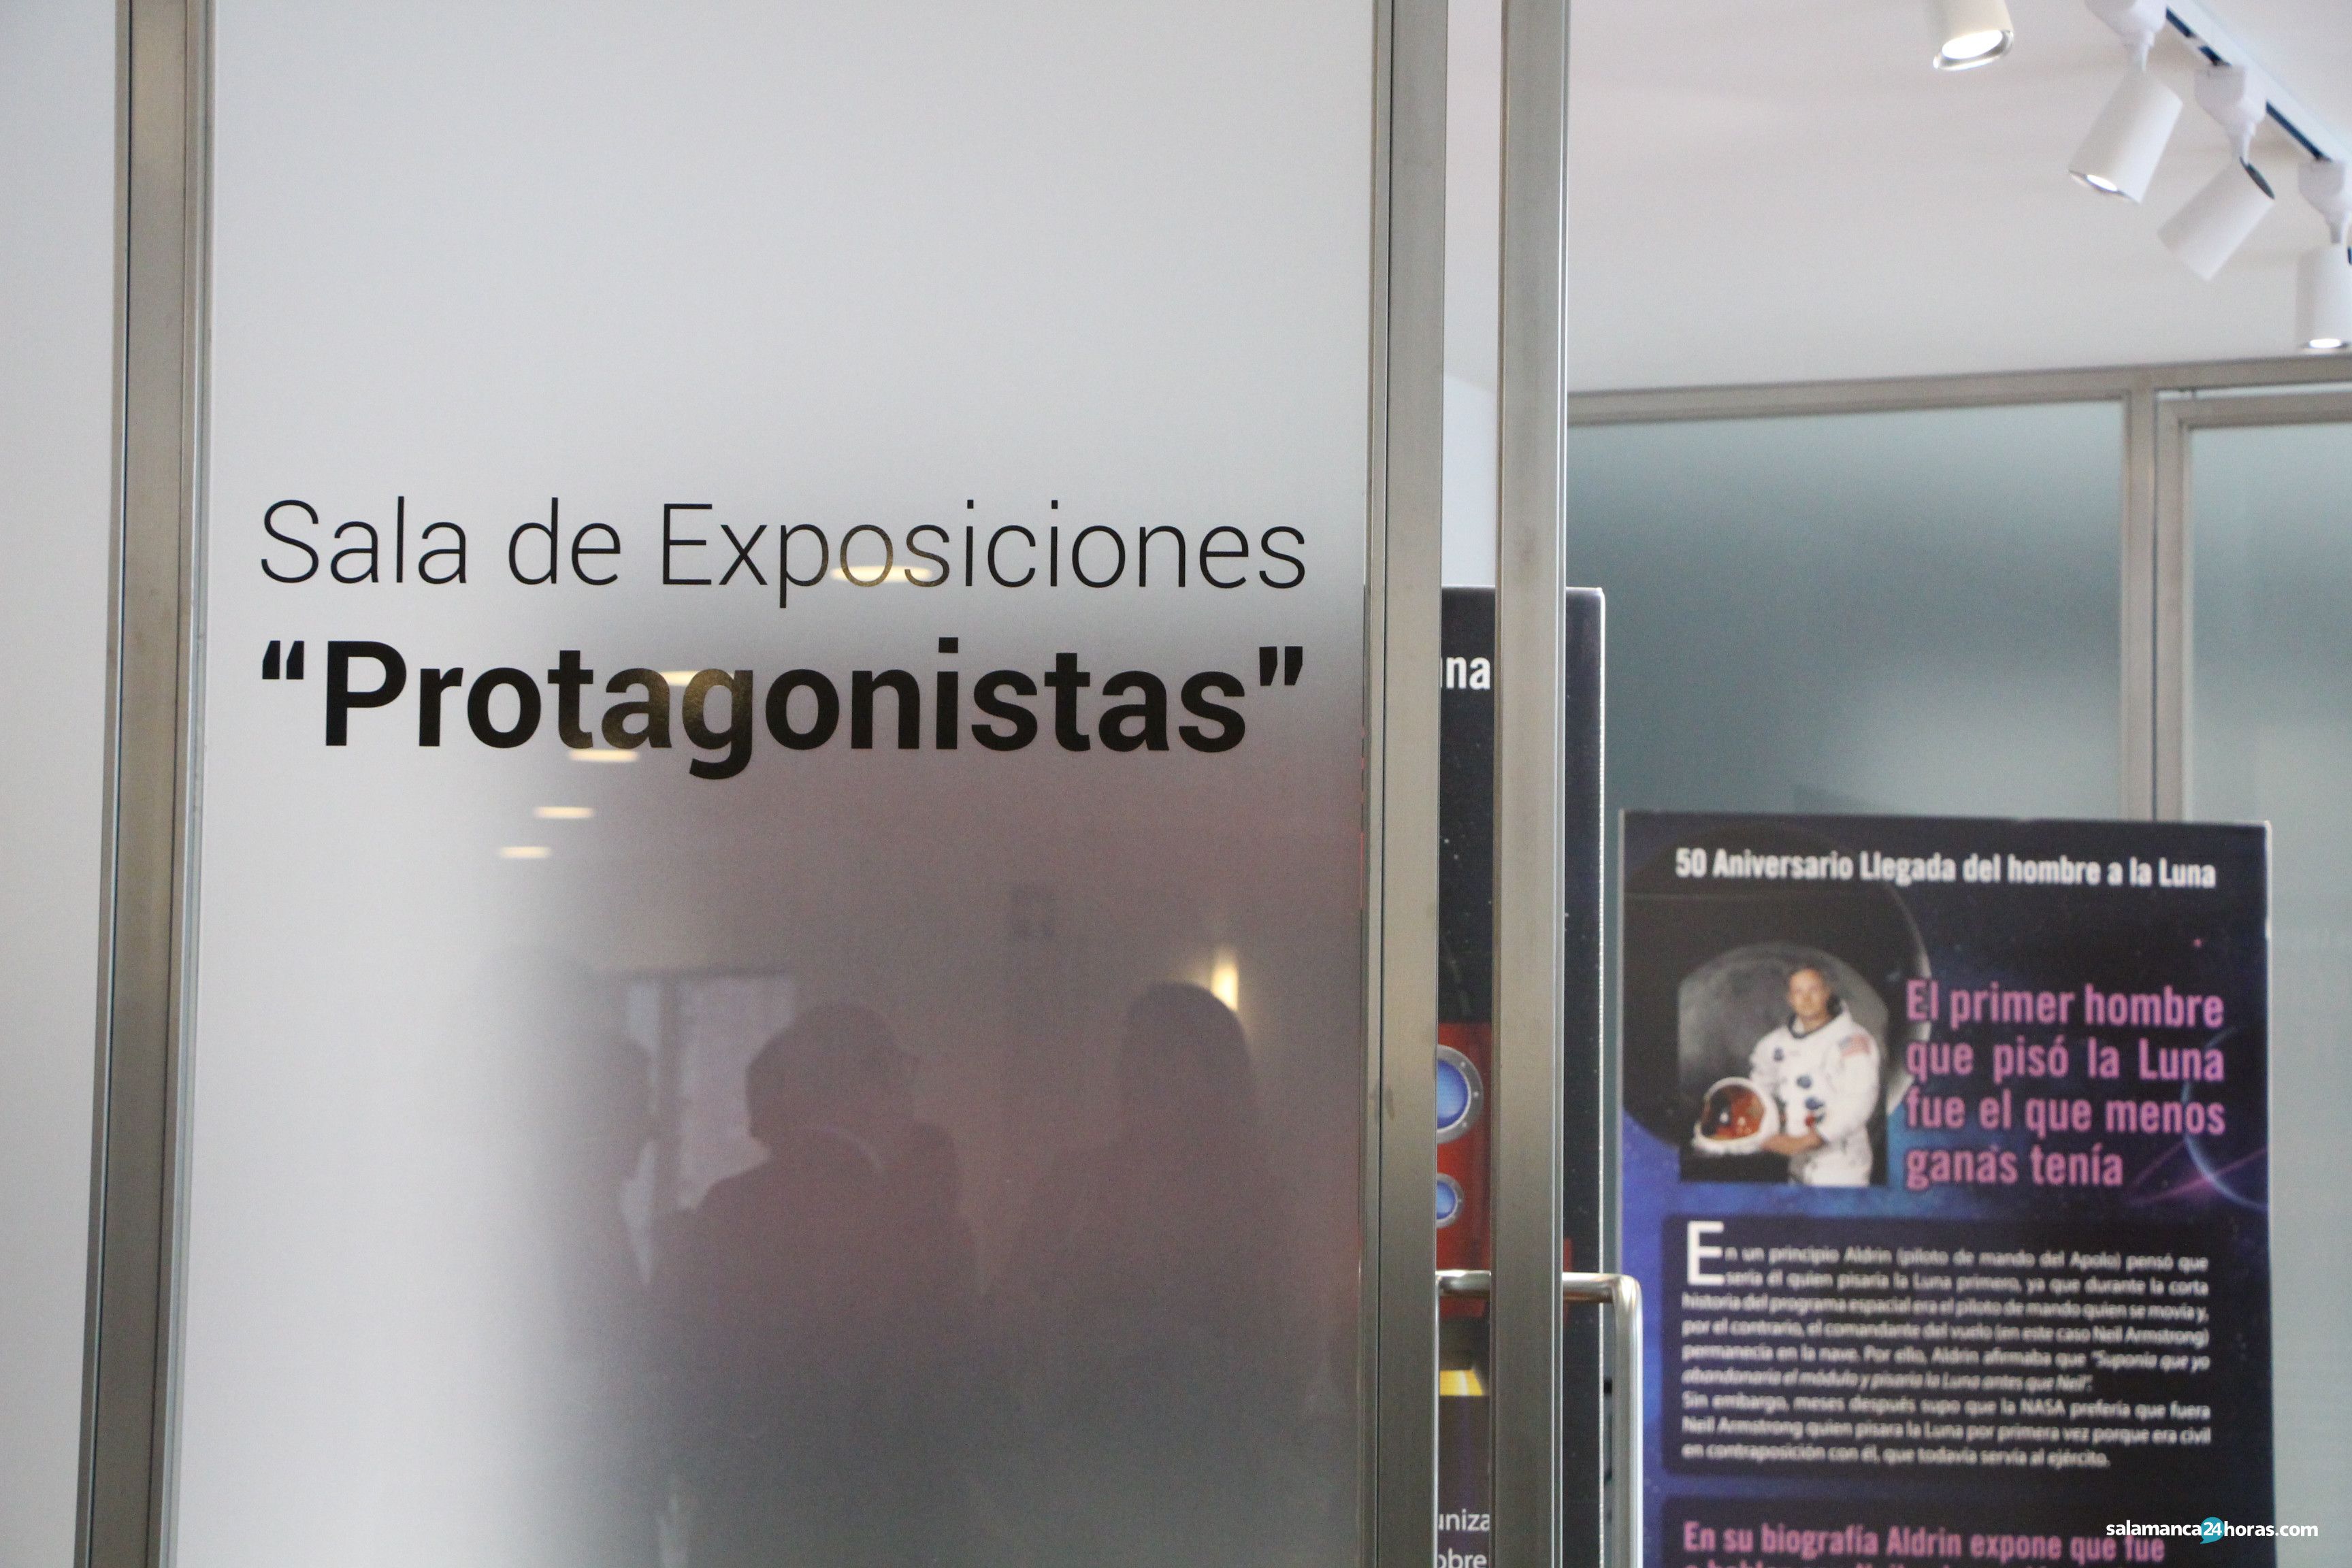  Sala de exposiciones Santa Marta (29 01 2020)1 